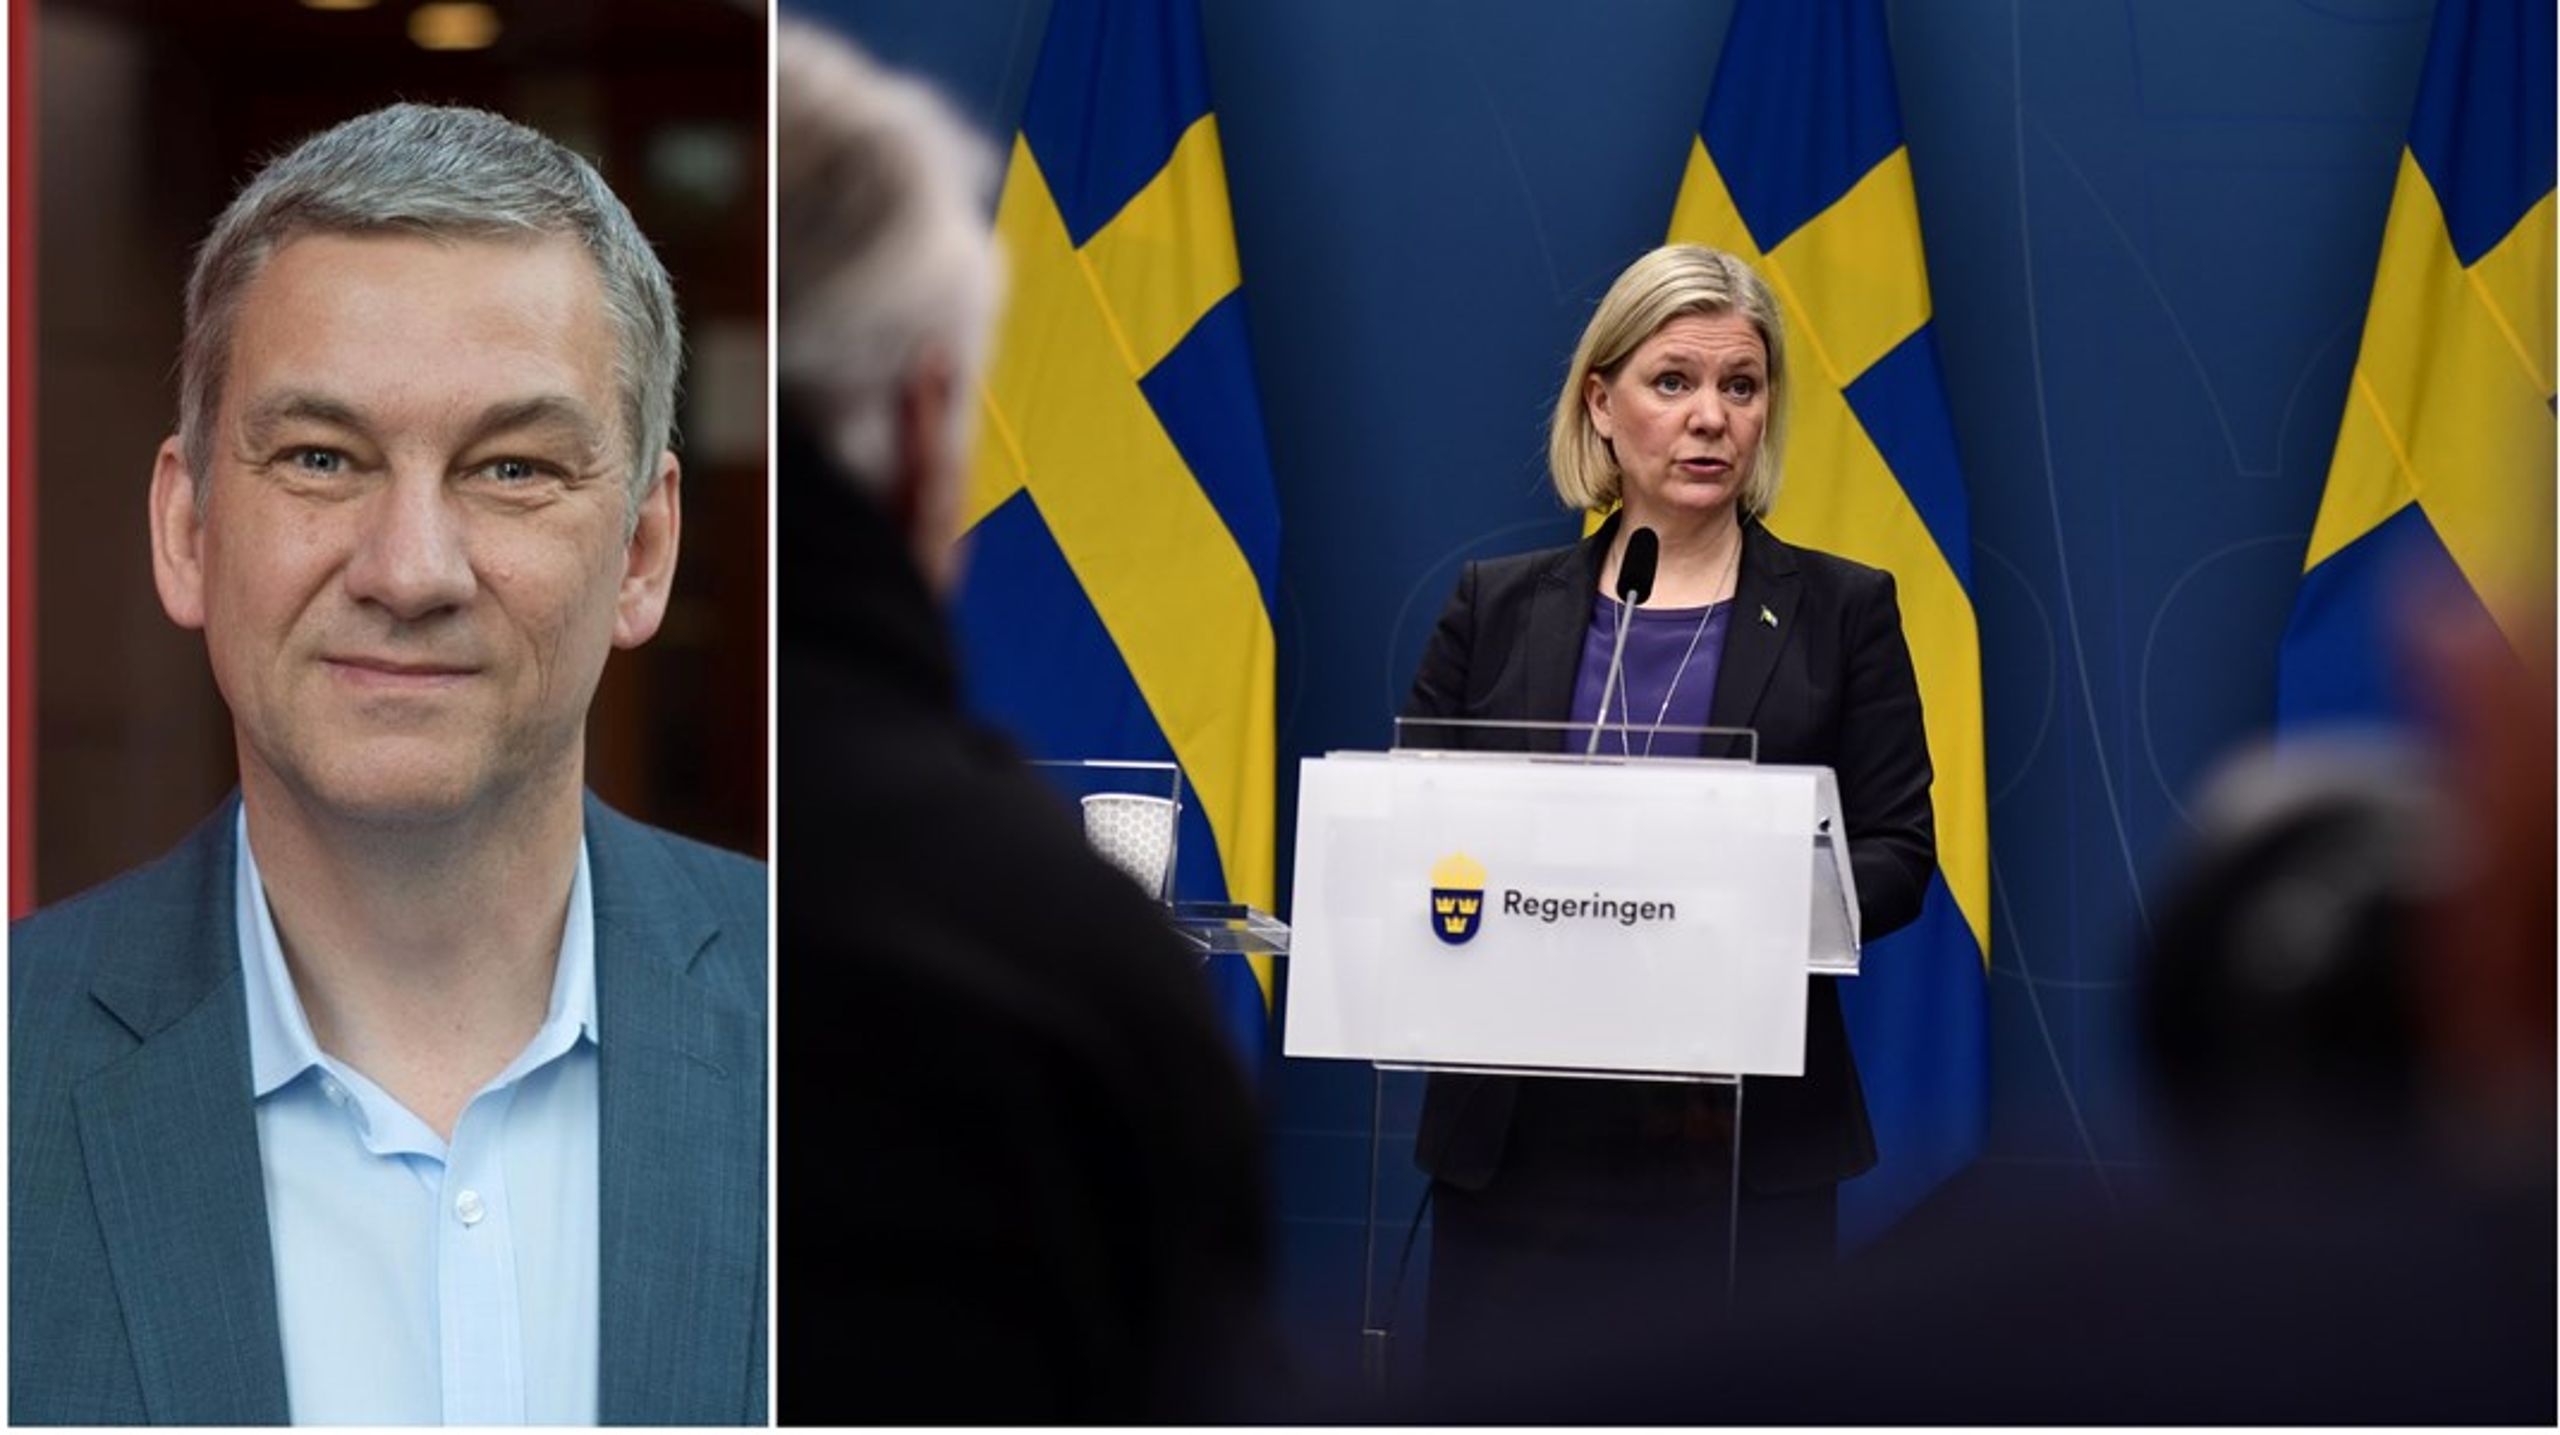 Finansdepartementets skickliga agerande i denna kris handlade till stor del om personligt ledarskap från Magdalena Andersson och hennes statssekreterare Emma Lennartsson. Där brast det på andra håll, skriver Mats Engström.